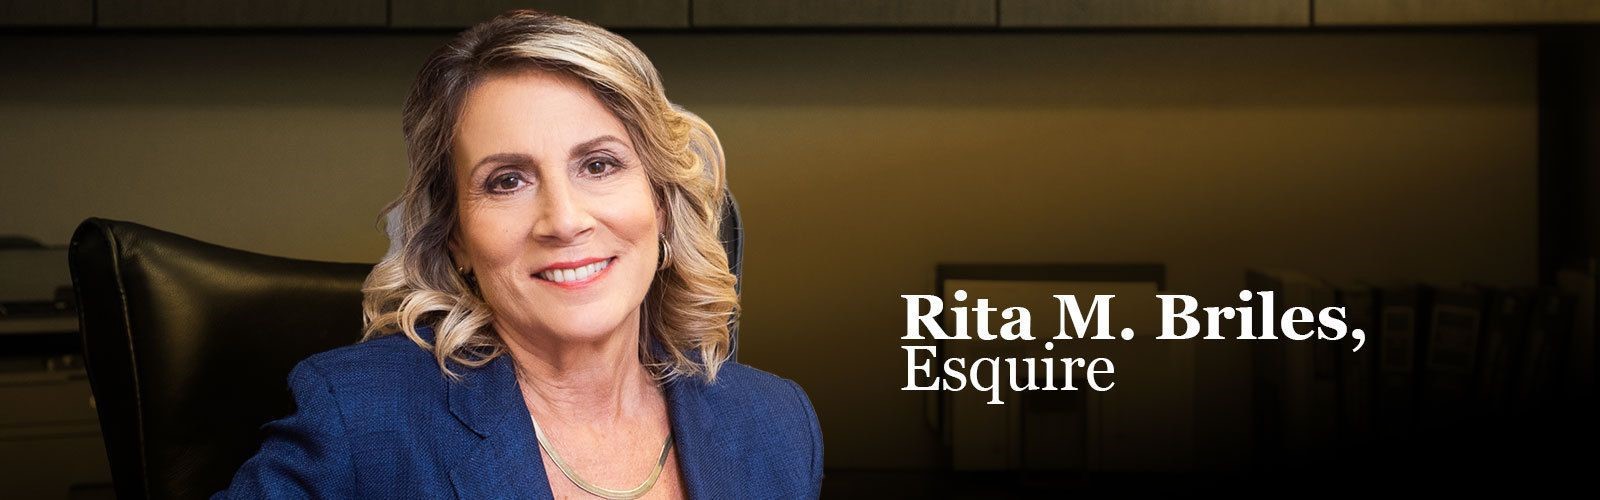 Rita M. Briles, Esquire